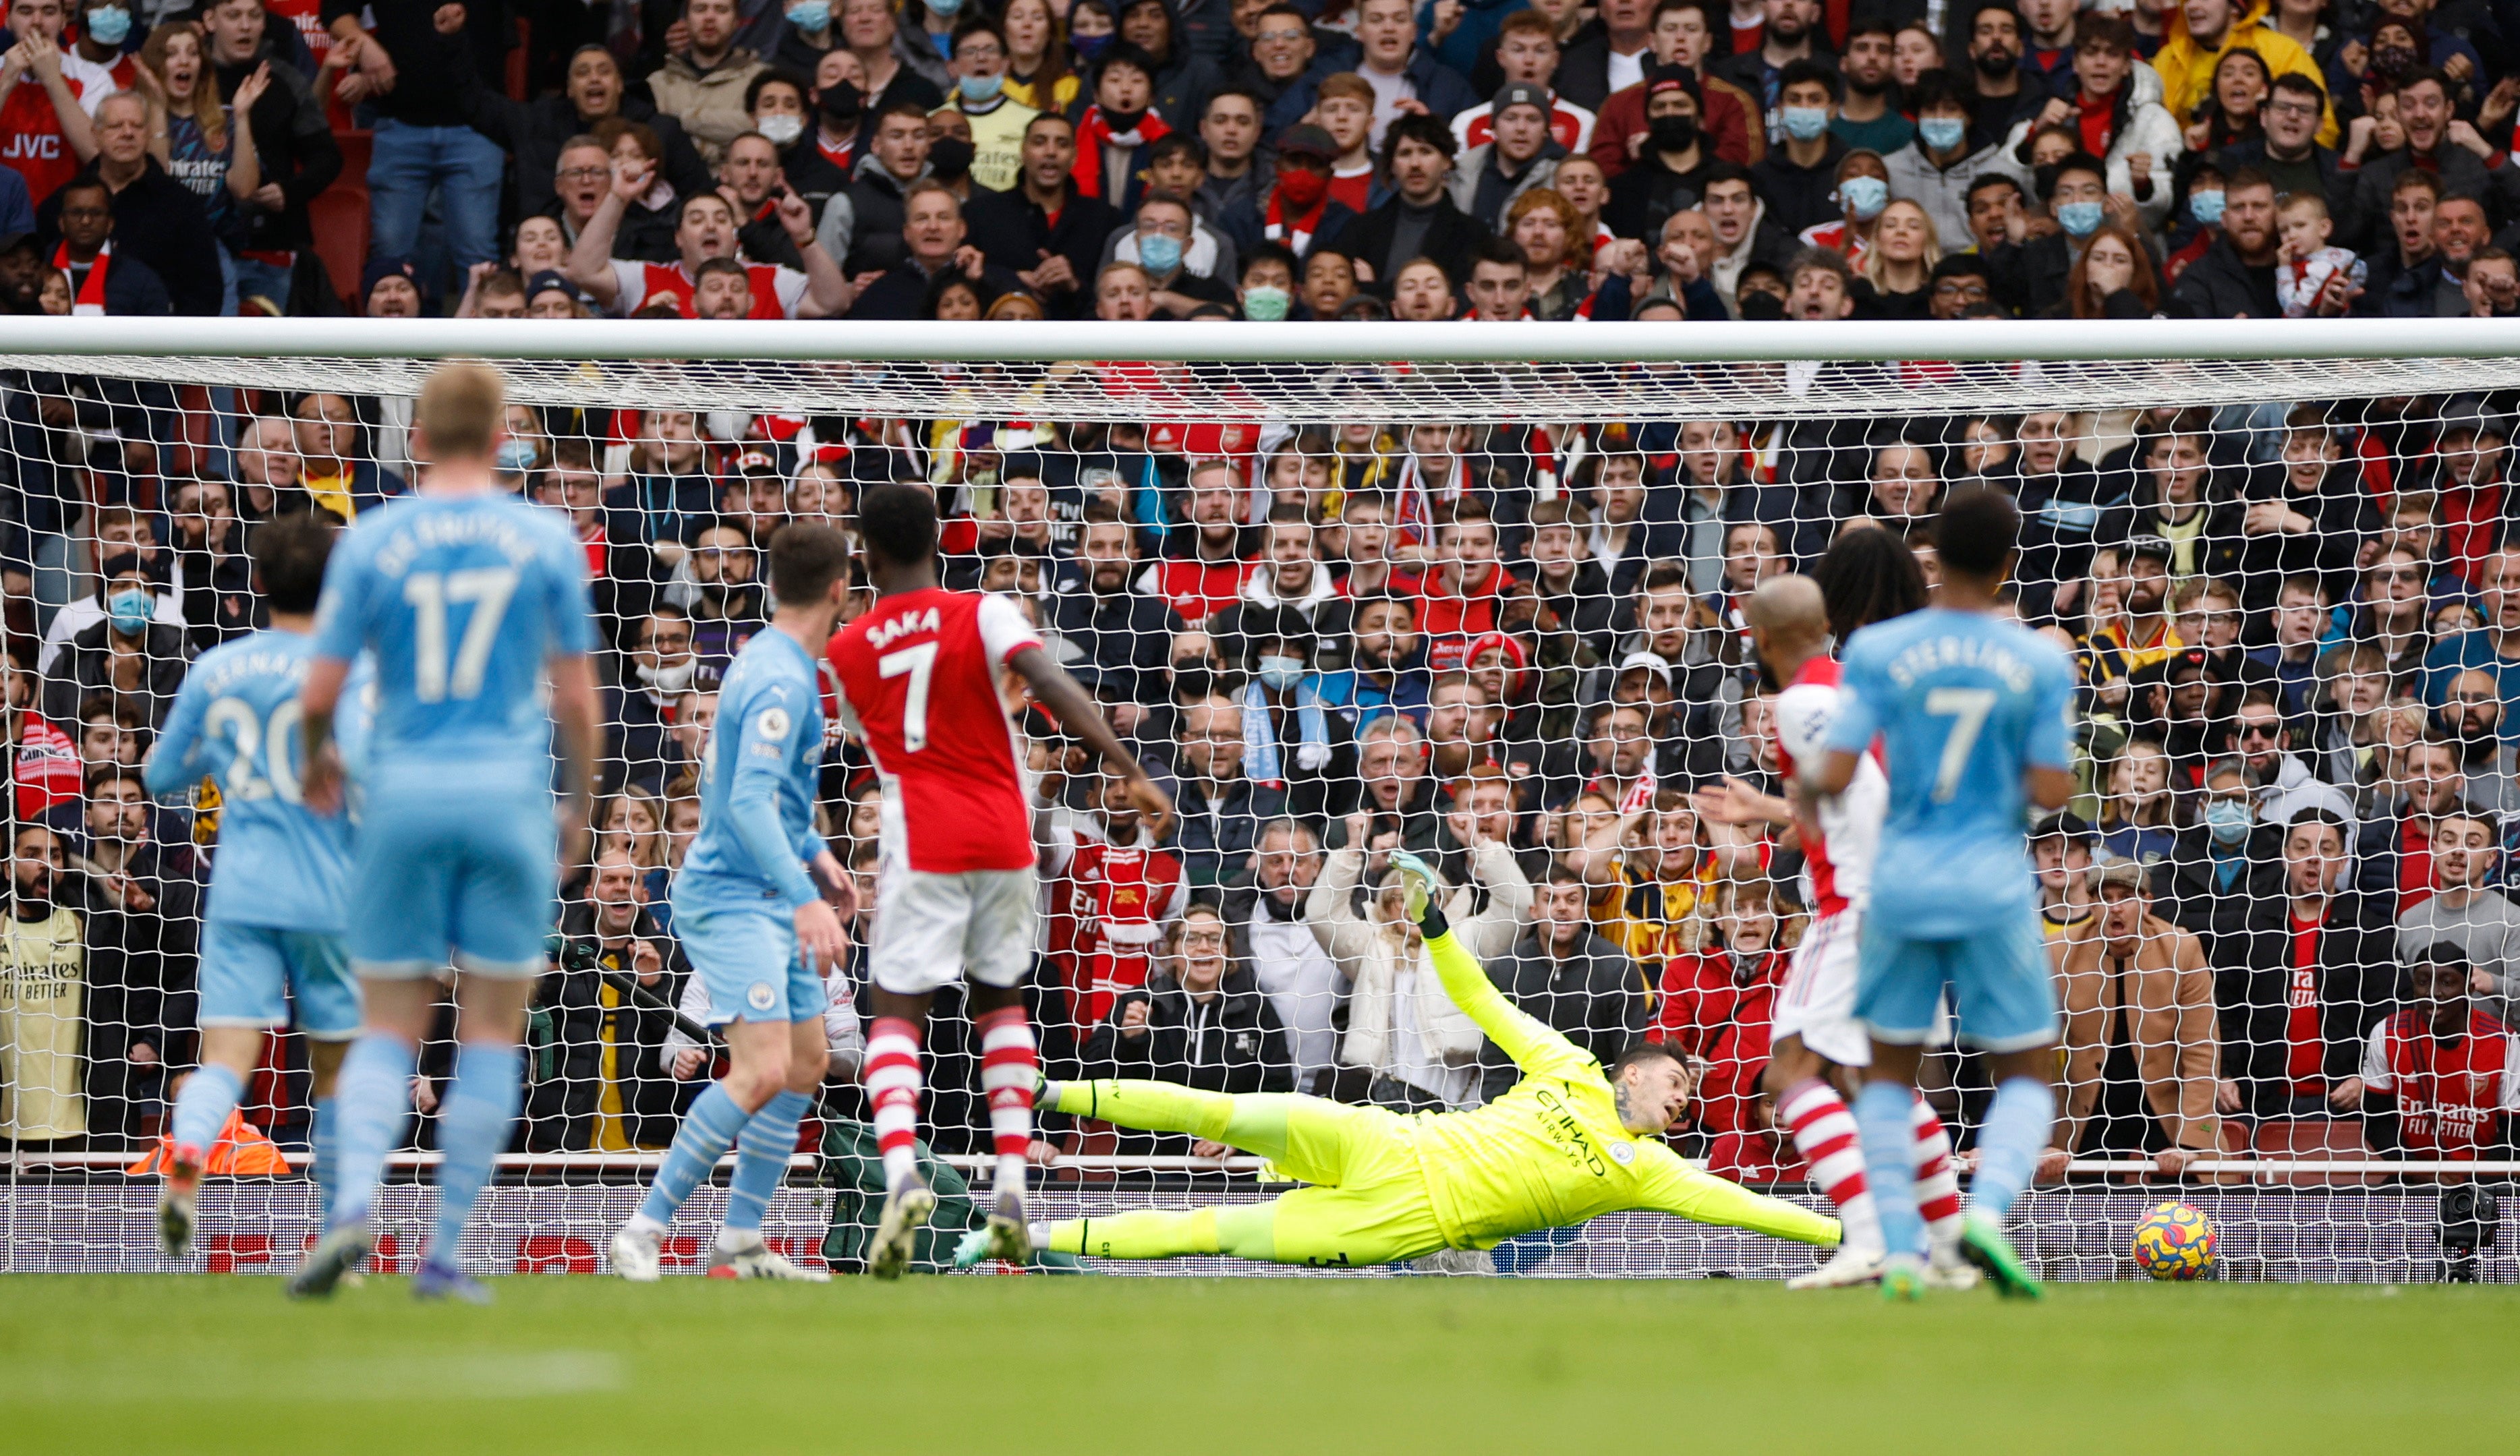 Bukayo Saka slots home Arsenal’s opening goal